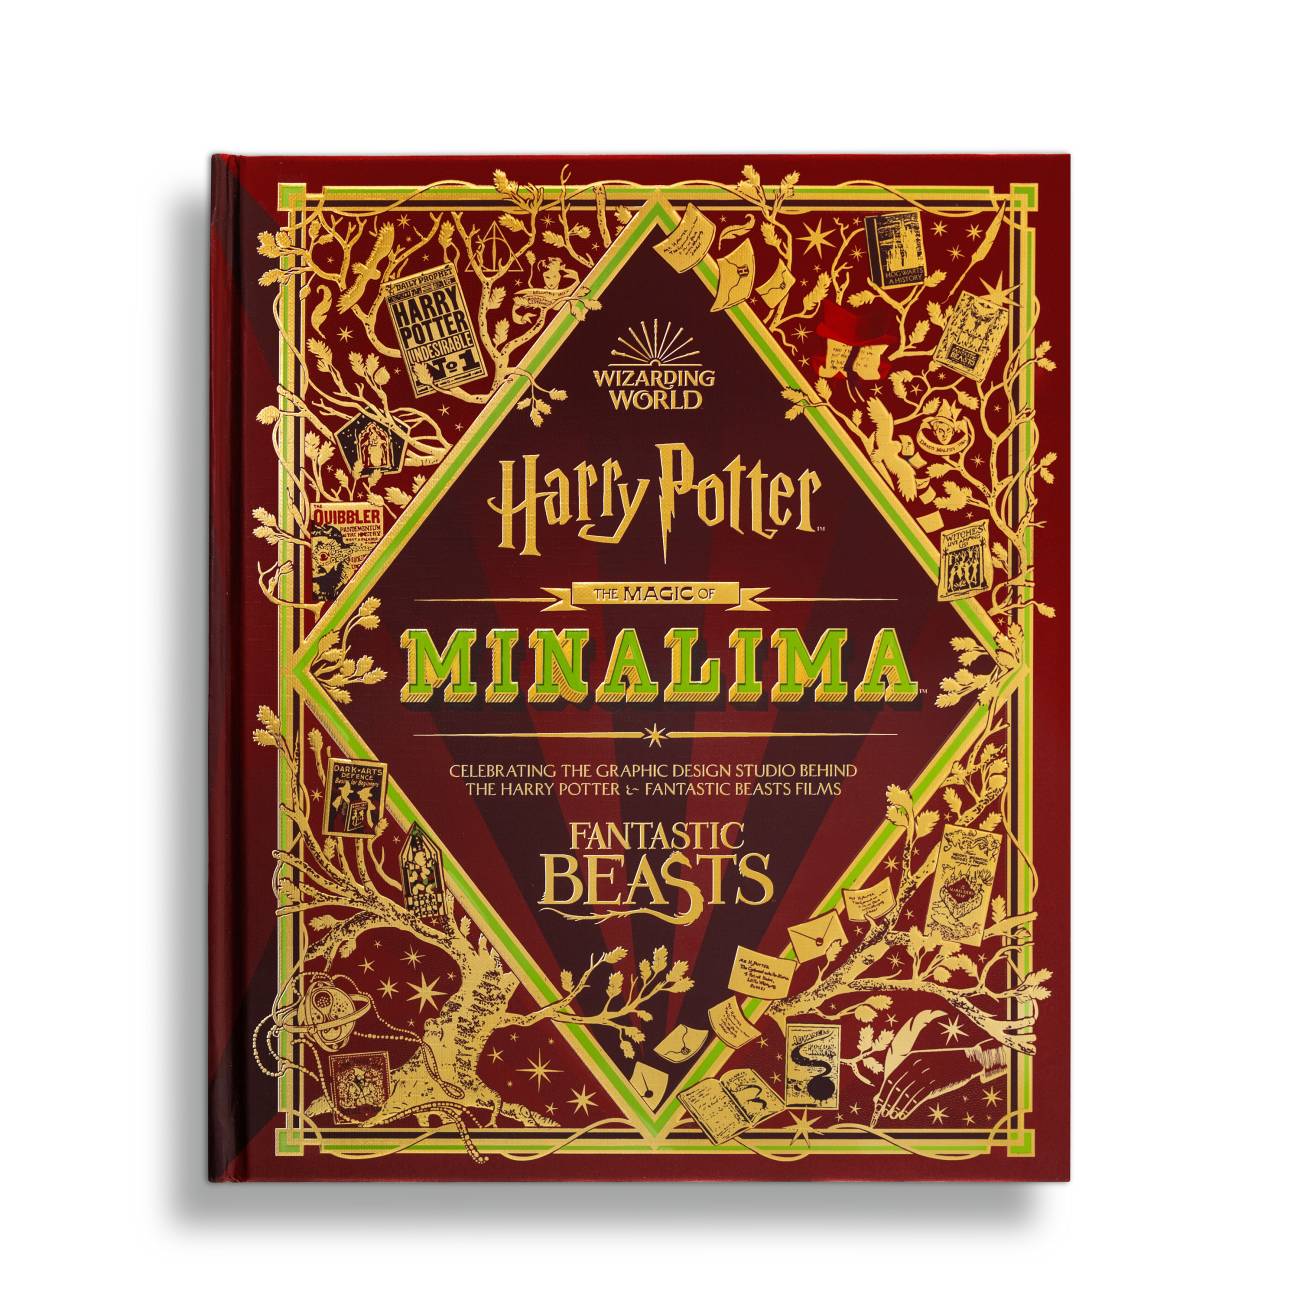 Harry Potter à l'école des sorciers illustré par Minalima en réimpression